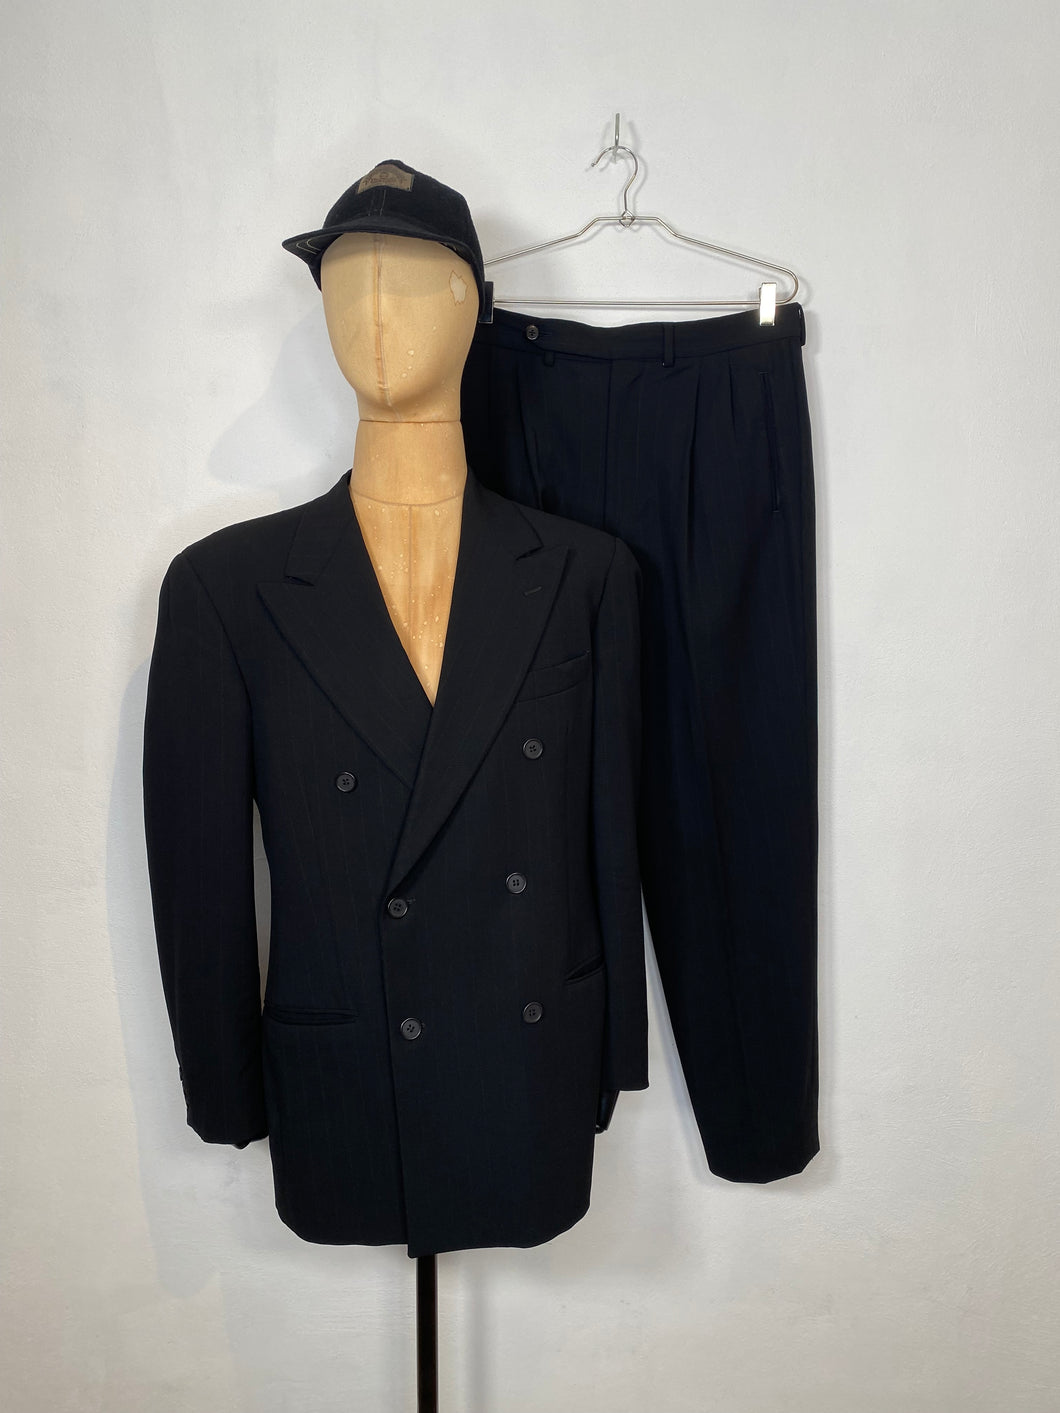 1982 Giorgio Armani LeCollezioni double breasted dinner suit